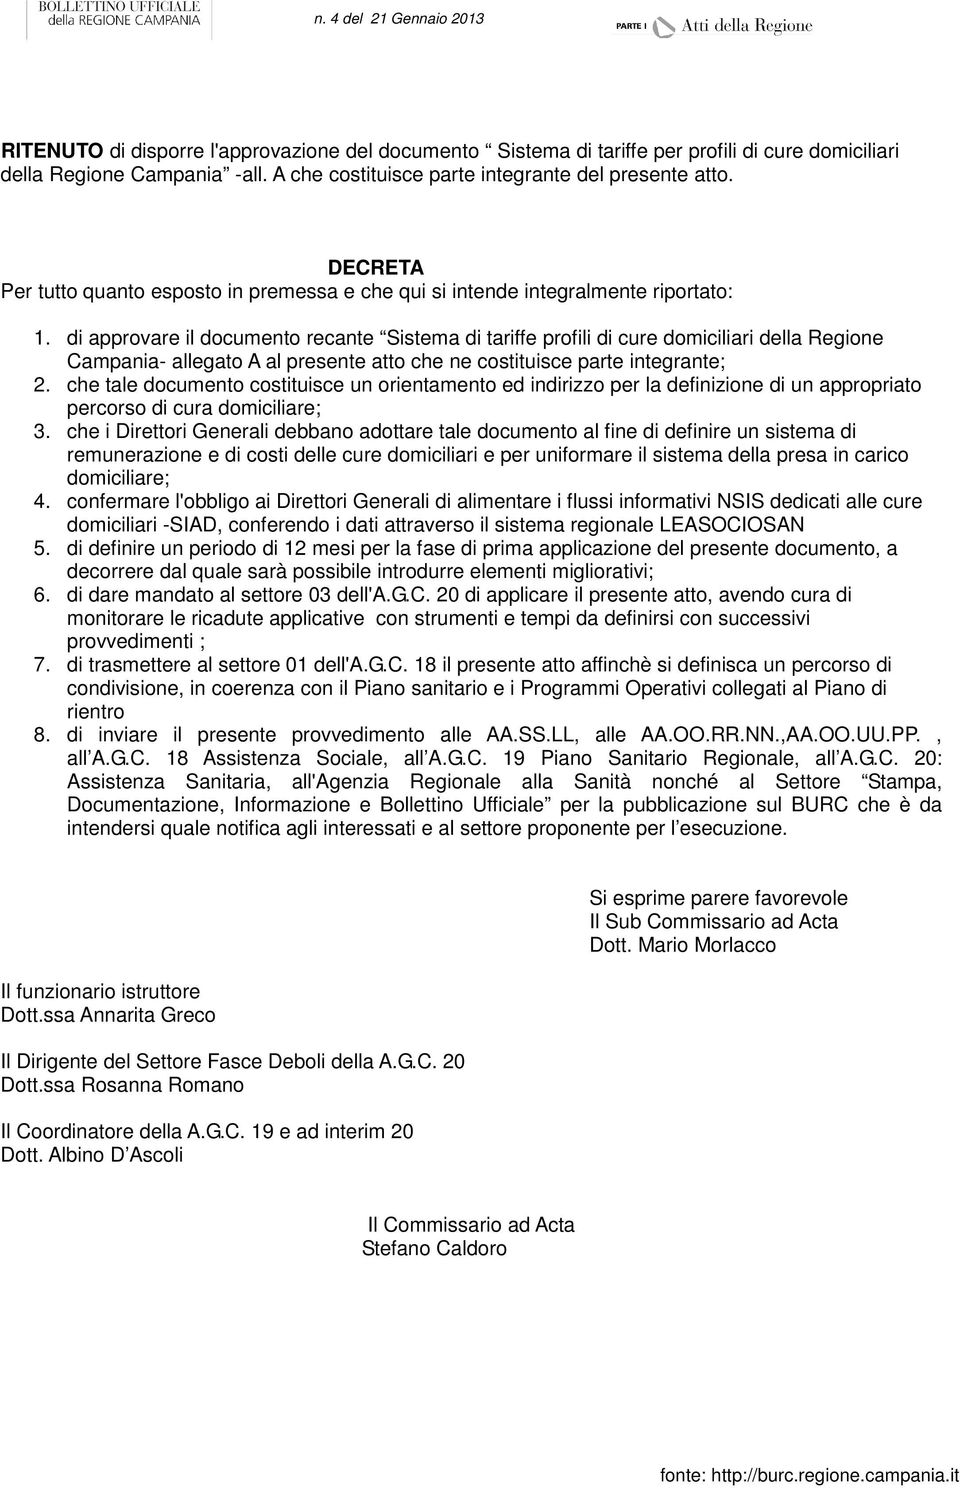 di approvare il documento recante Sistema di tariffe profili di cure domiciliari della Regione Campania- allegato A al presente atto che ne costituisce parte integrante; 2.